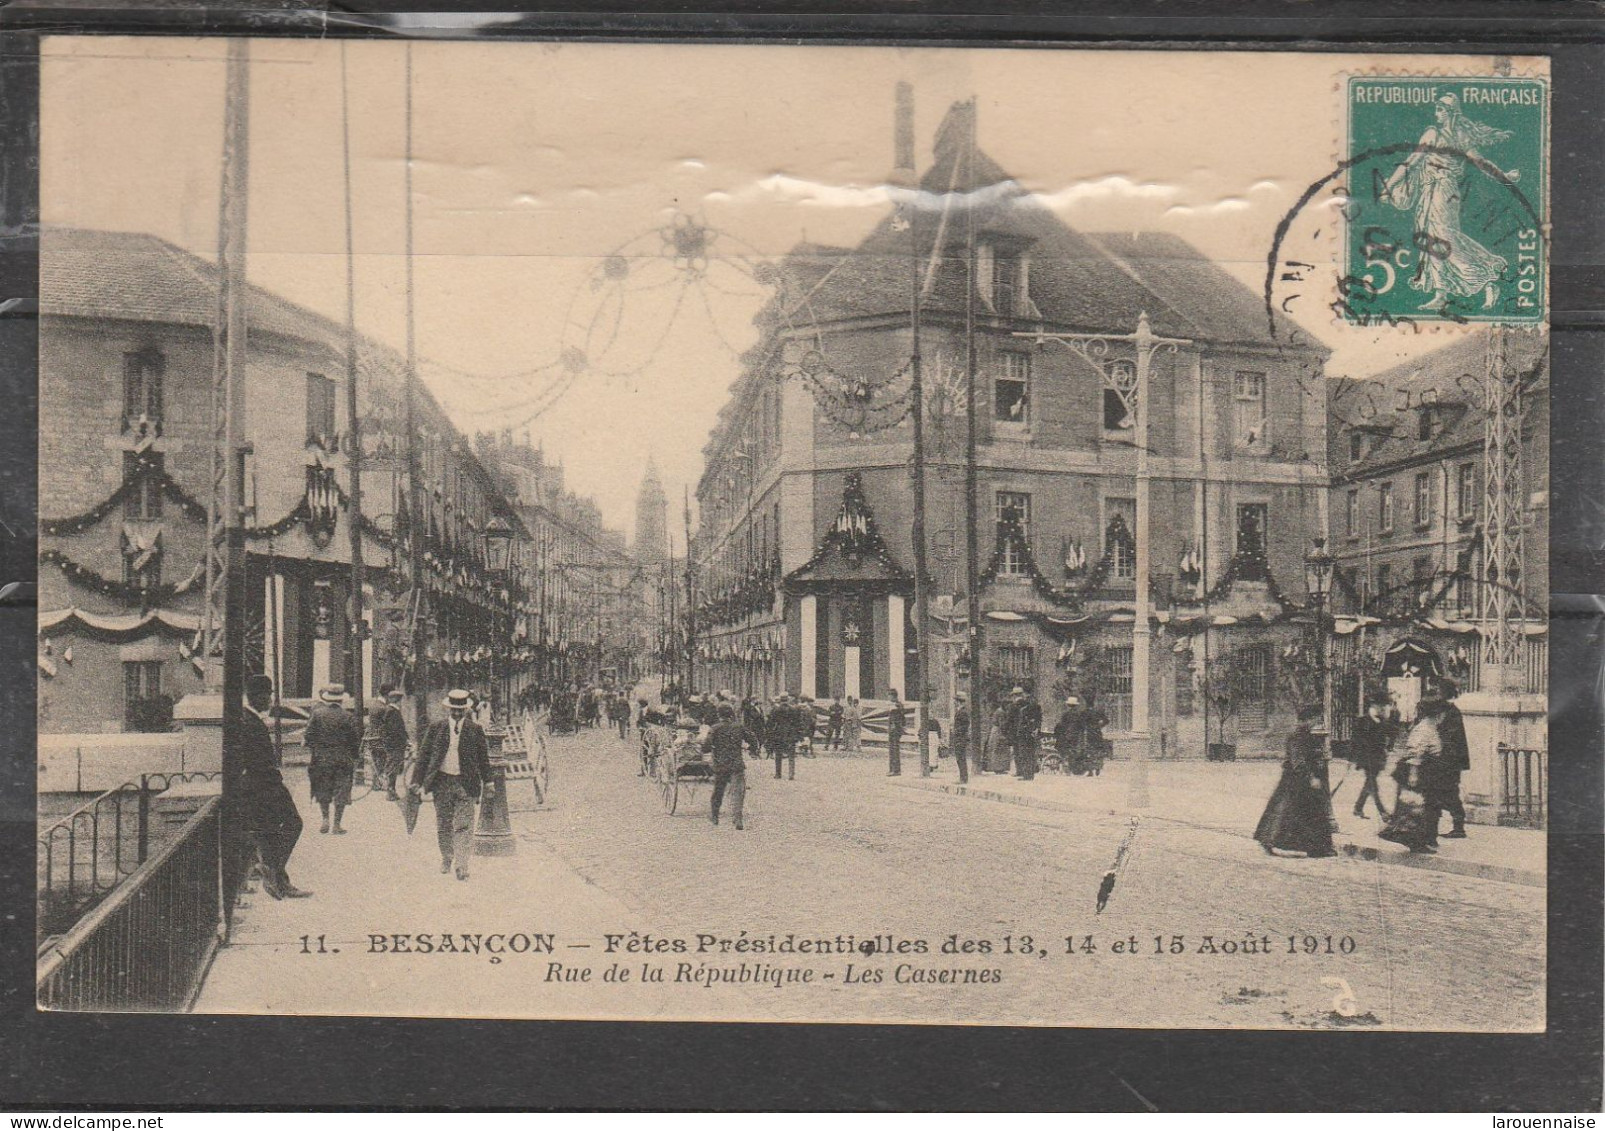 25 - BESANCON - Fêtes Présidentielles Des 13,14 Et 15 Août 1910 - Rue De La République - Les Casernes - Besancon